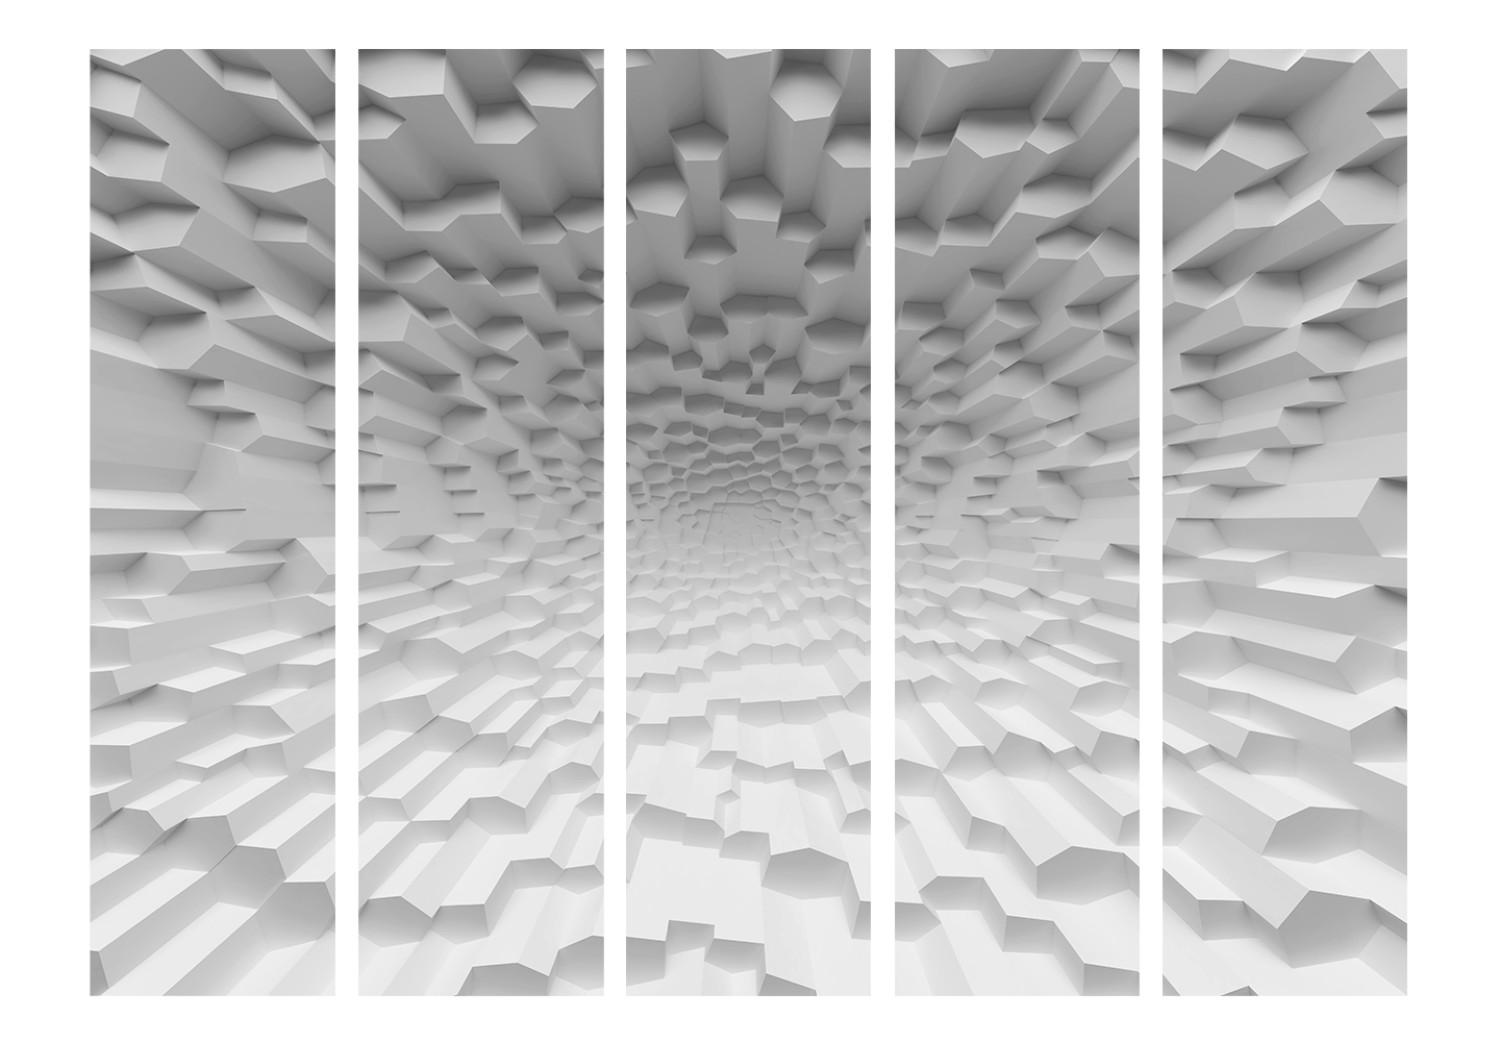 Biombo original El abismo del olvido II: túnel blanco interminable y abstracto